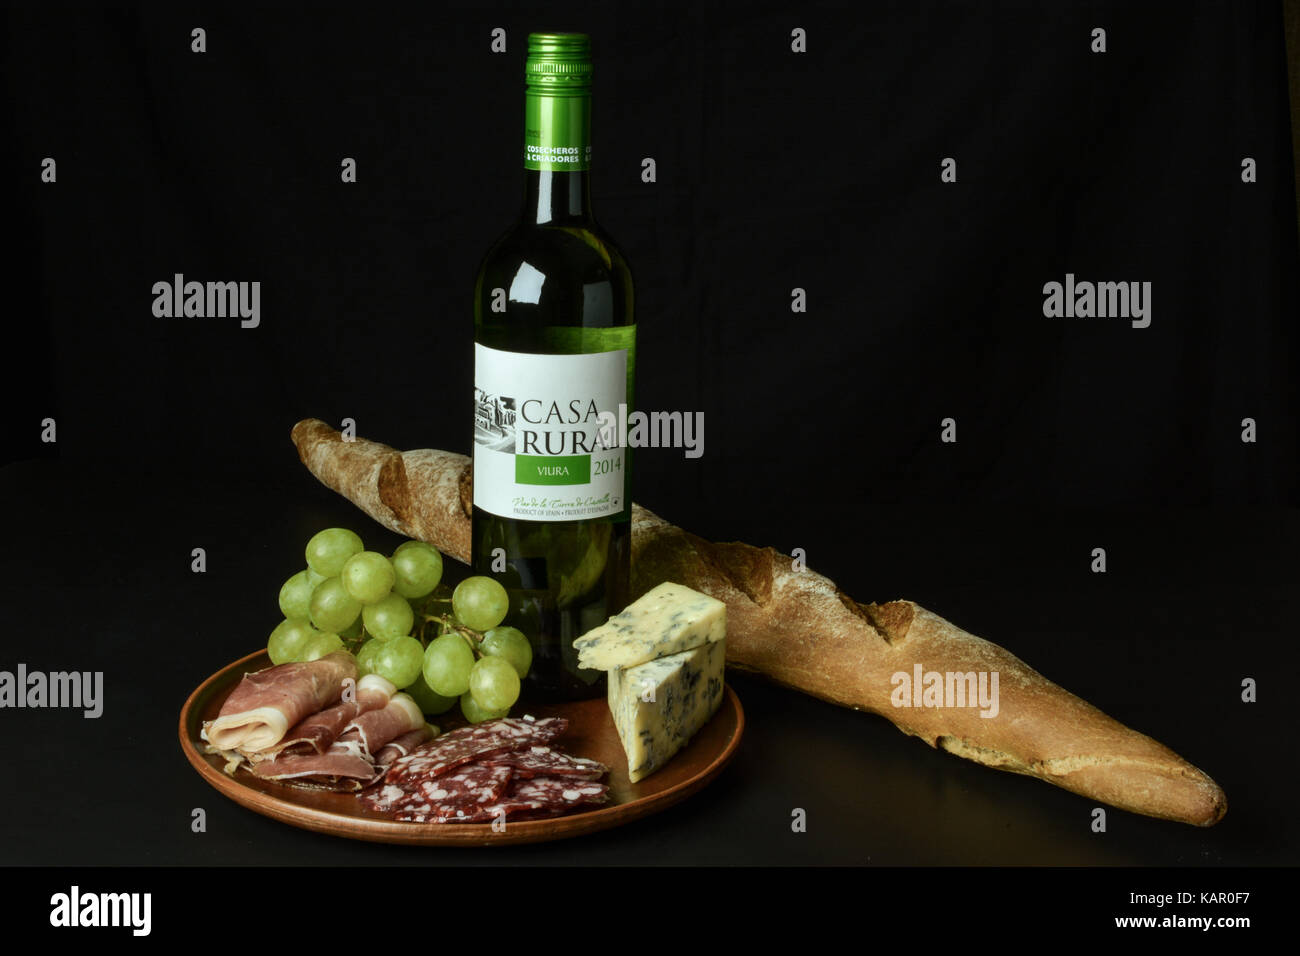 Primorskoe, Ukraine - 4 août 2016 : vin blanc espagnol de 2014 'casa rural' viuro', une bande de raisin blanc, fromage bleu, jambon, salami, accueil Banque D'Images